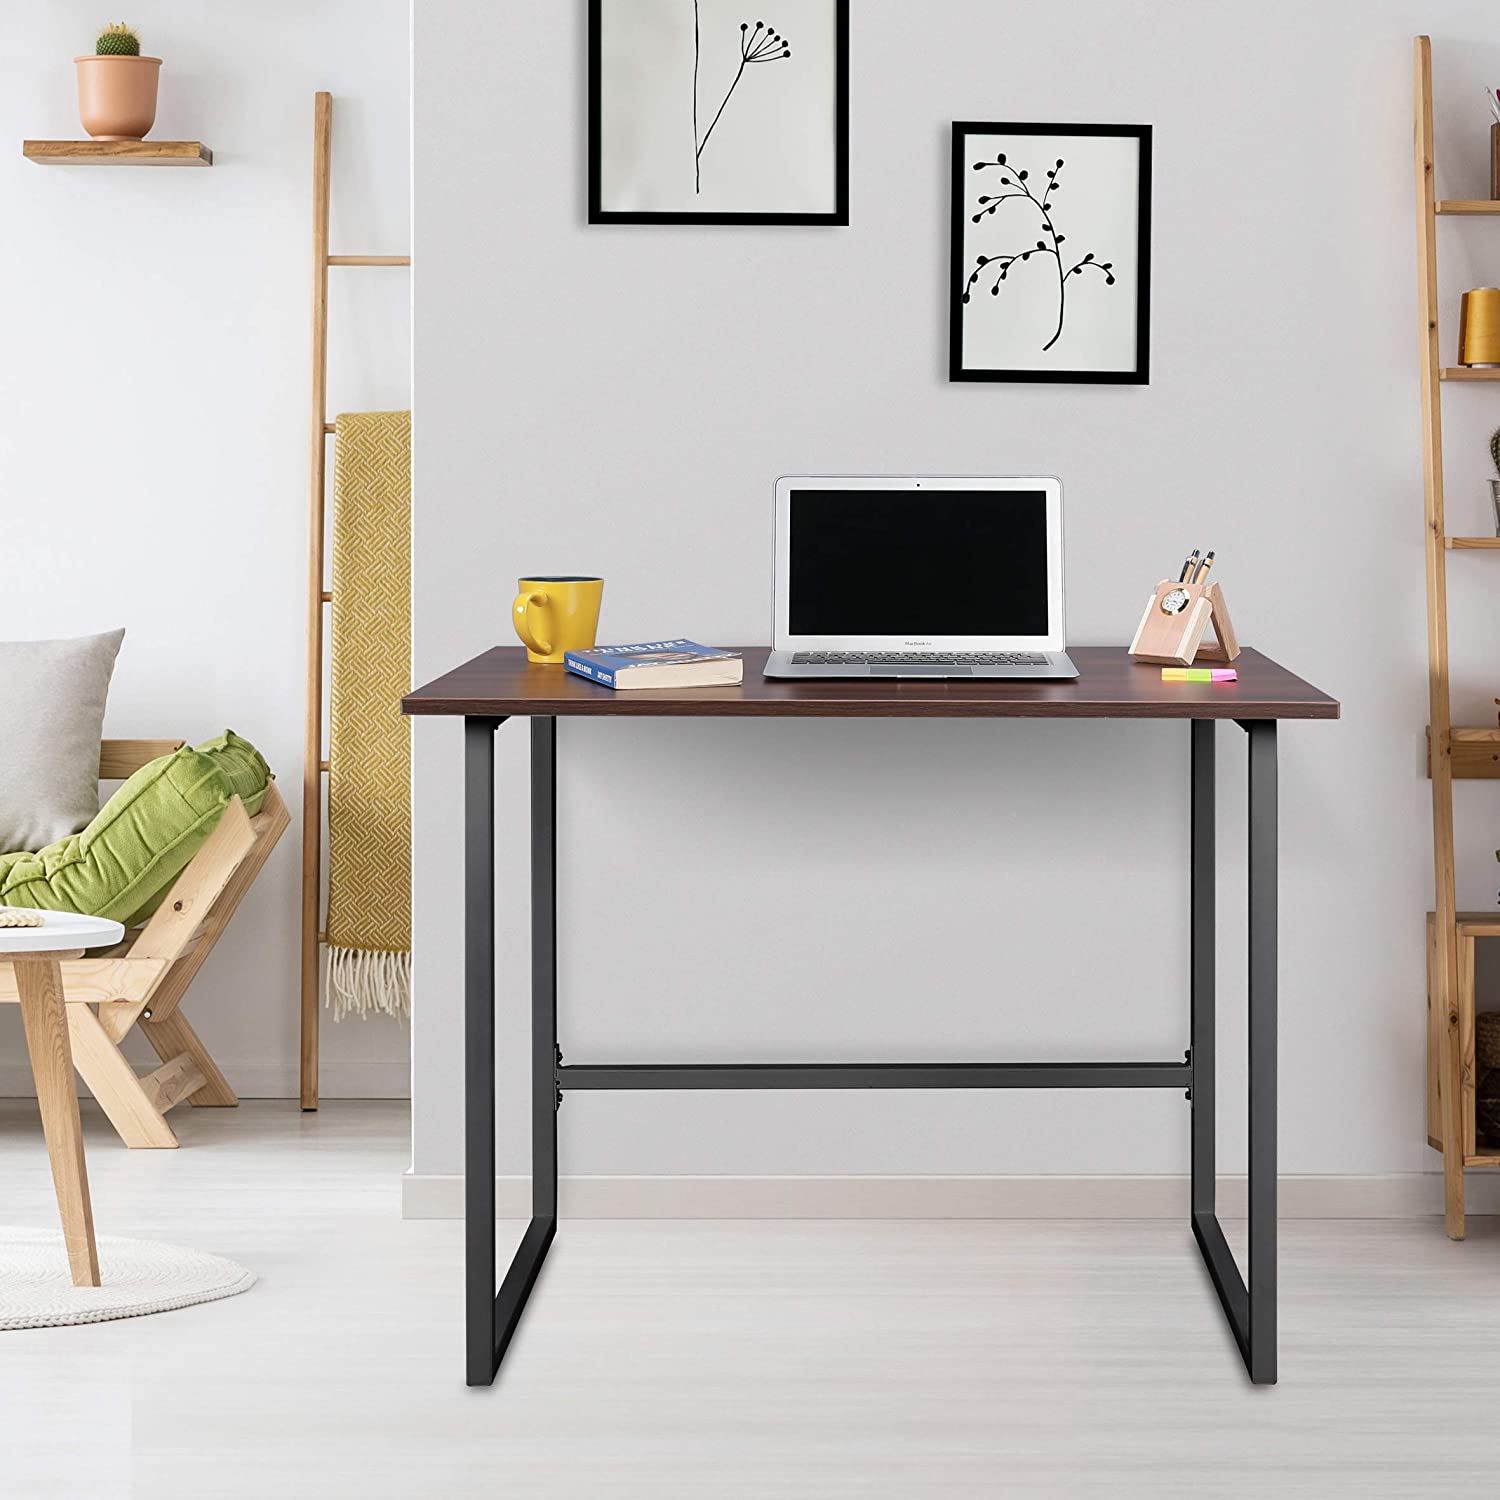 Wipro Furniture Arena Natural Wood Office Desk